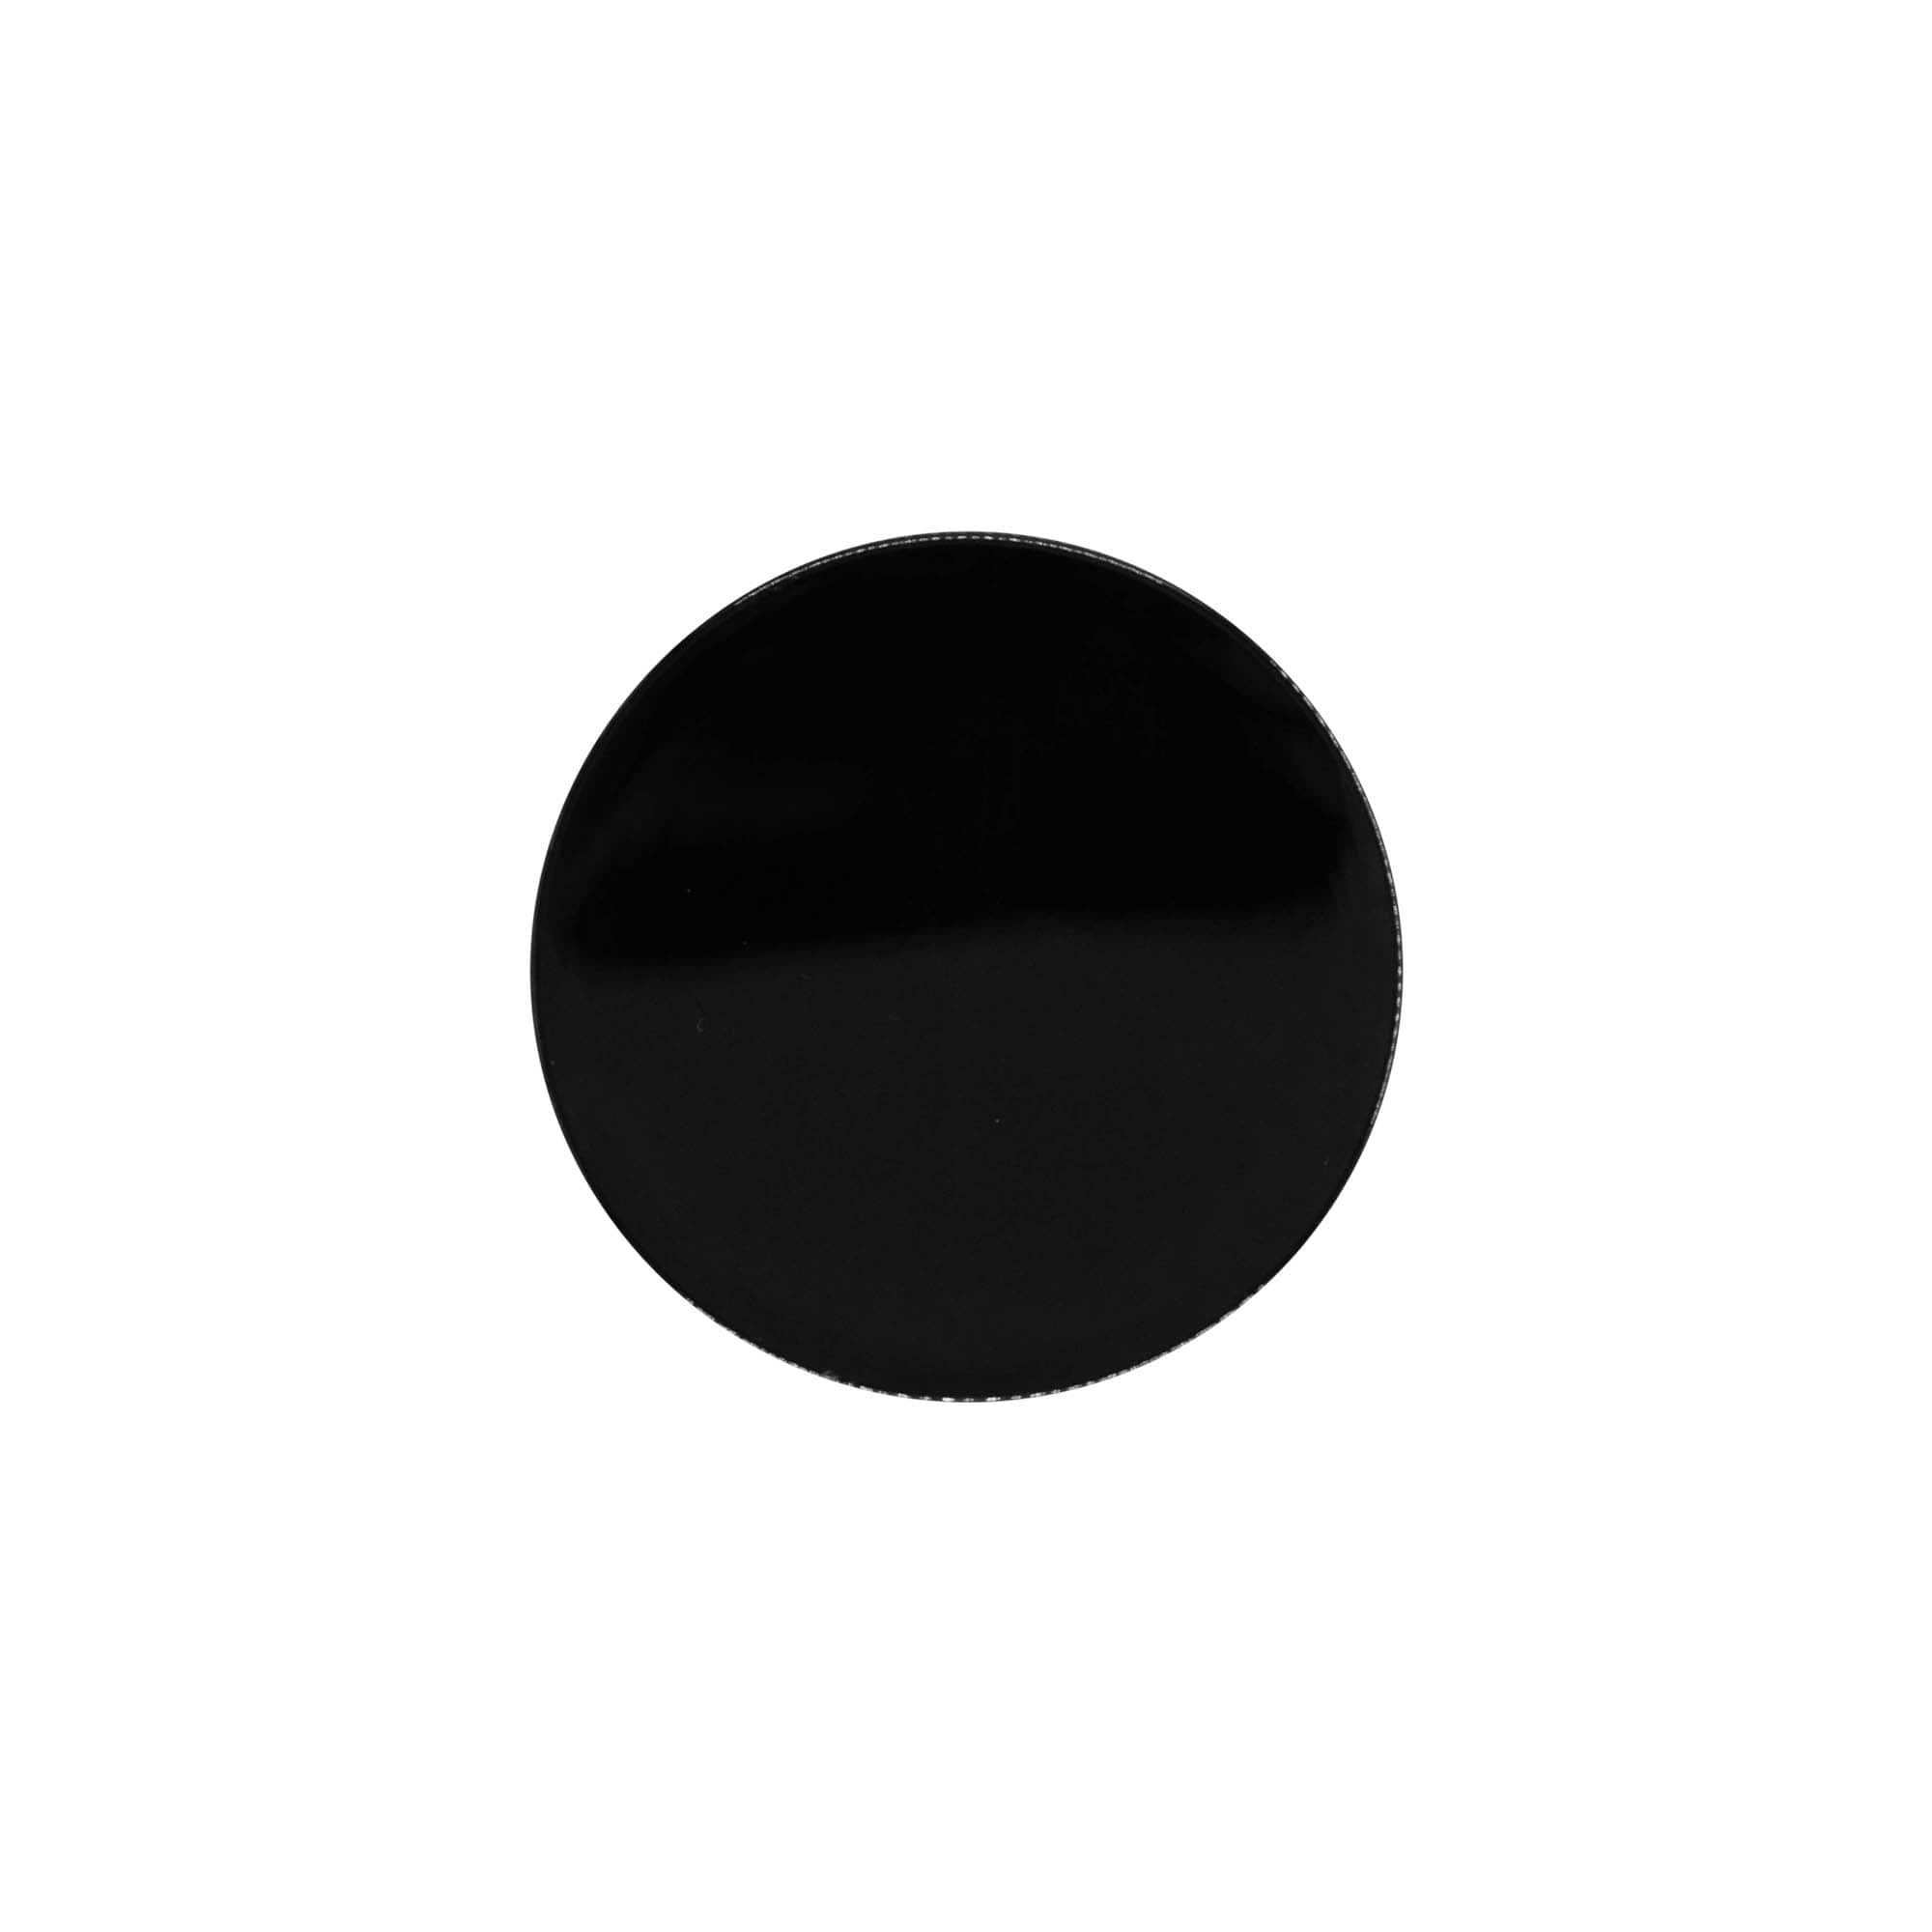 Zakrętka, tworzywo sztuczne PP, kolor czarny, do zamknięcia: GPI 70/400